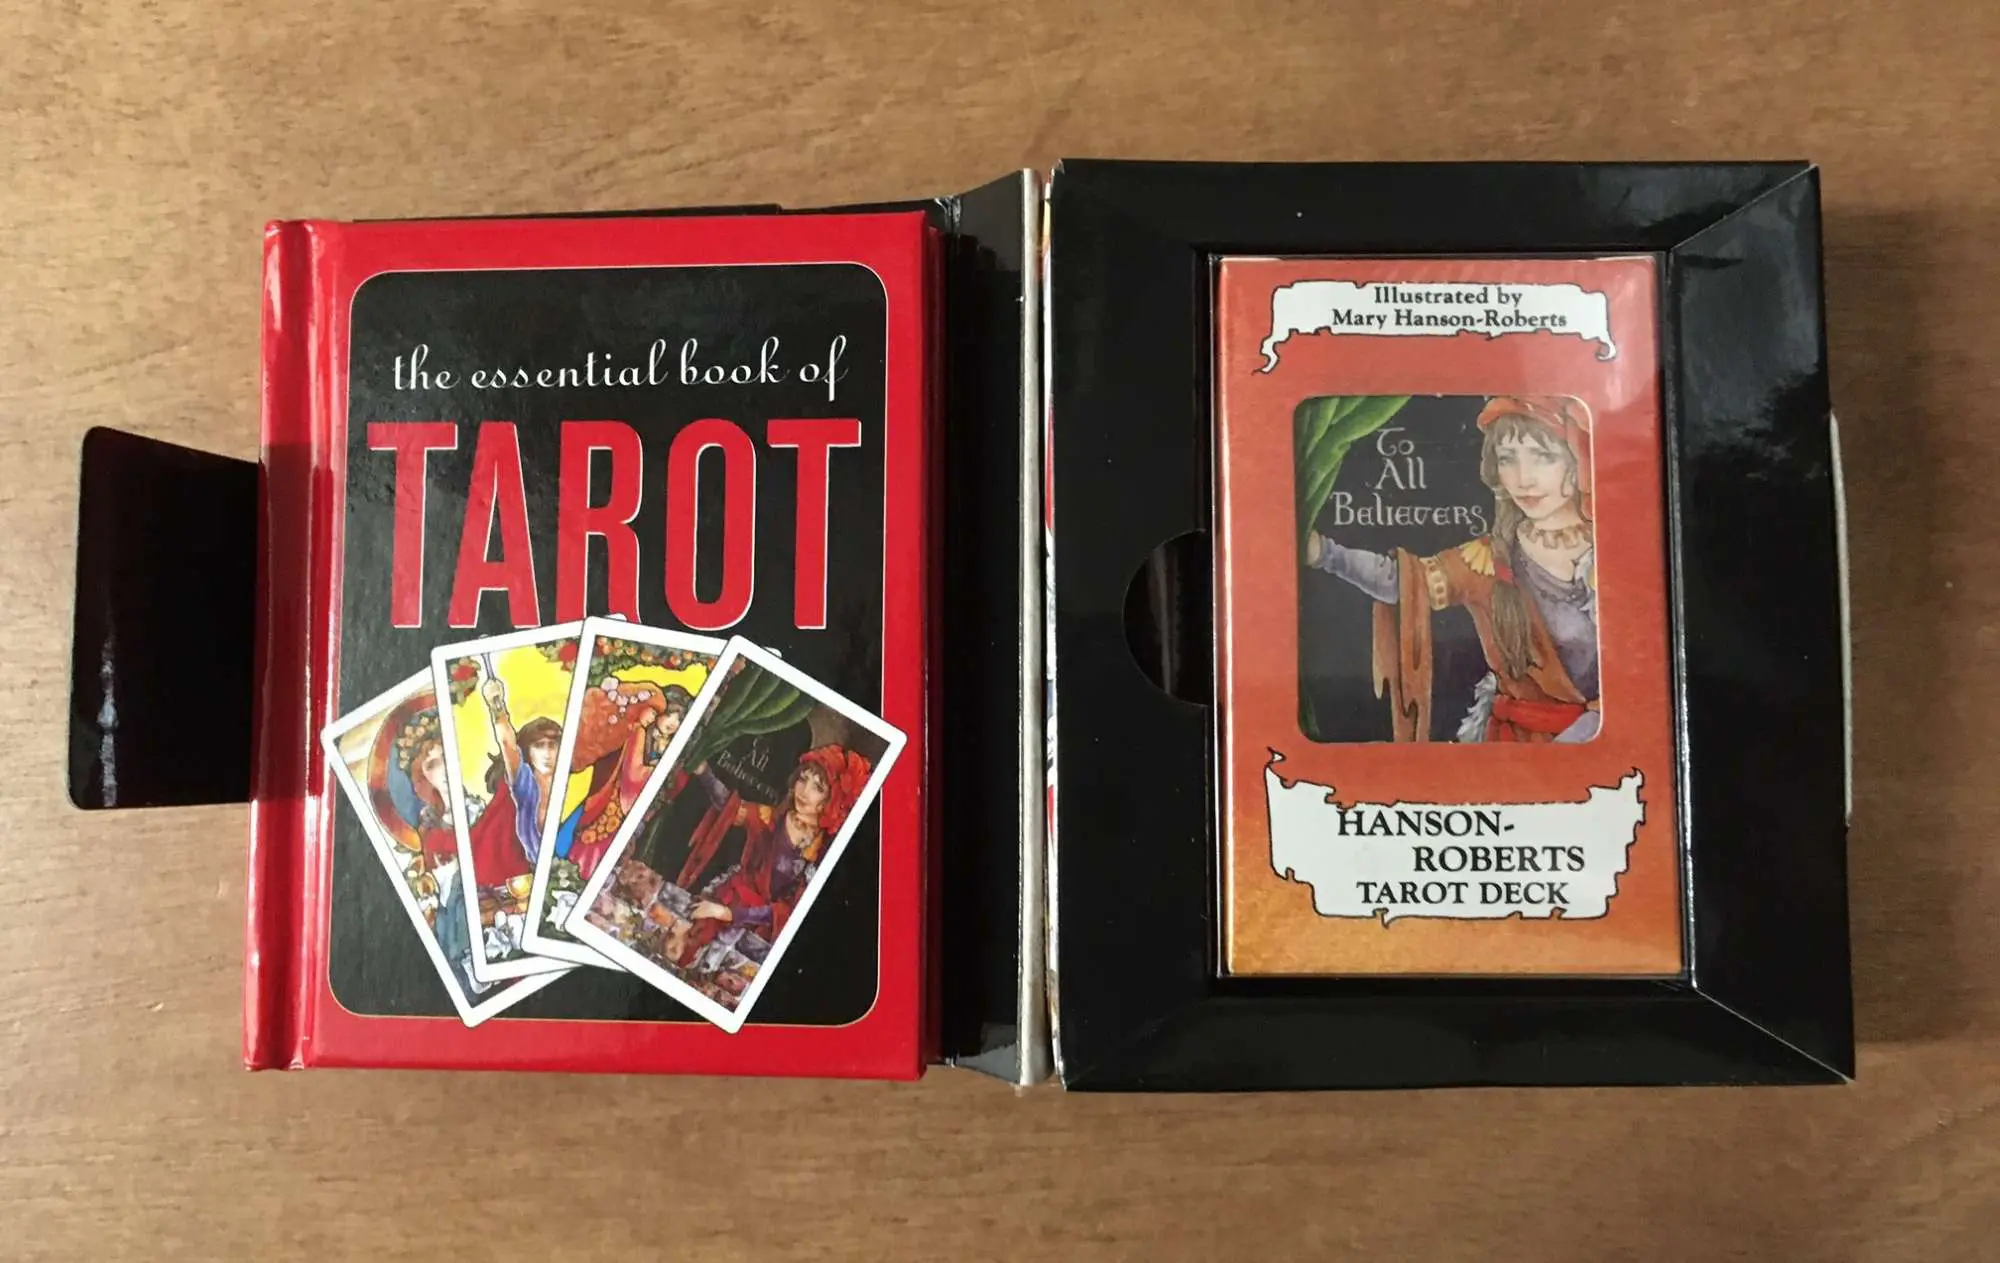 Tarot Go! Book Card Set - Salem Museum